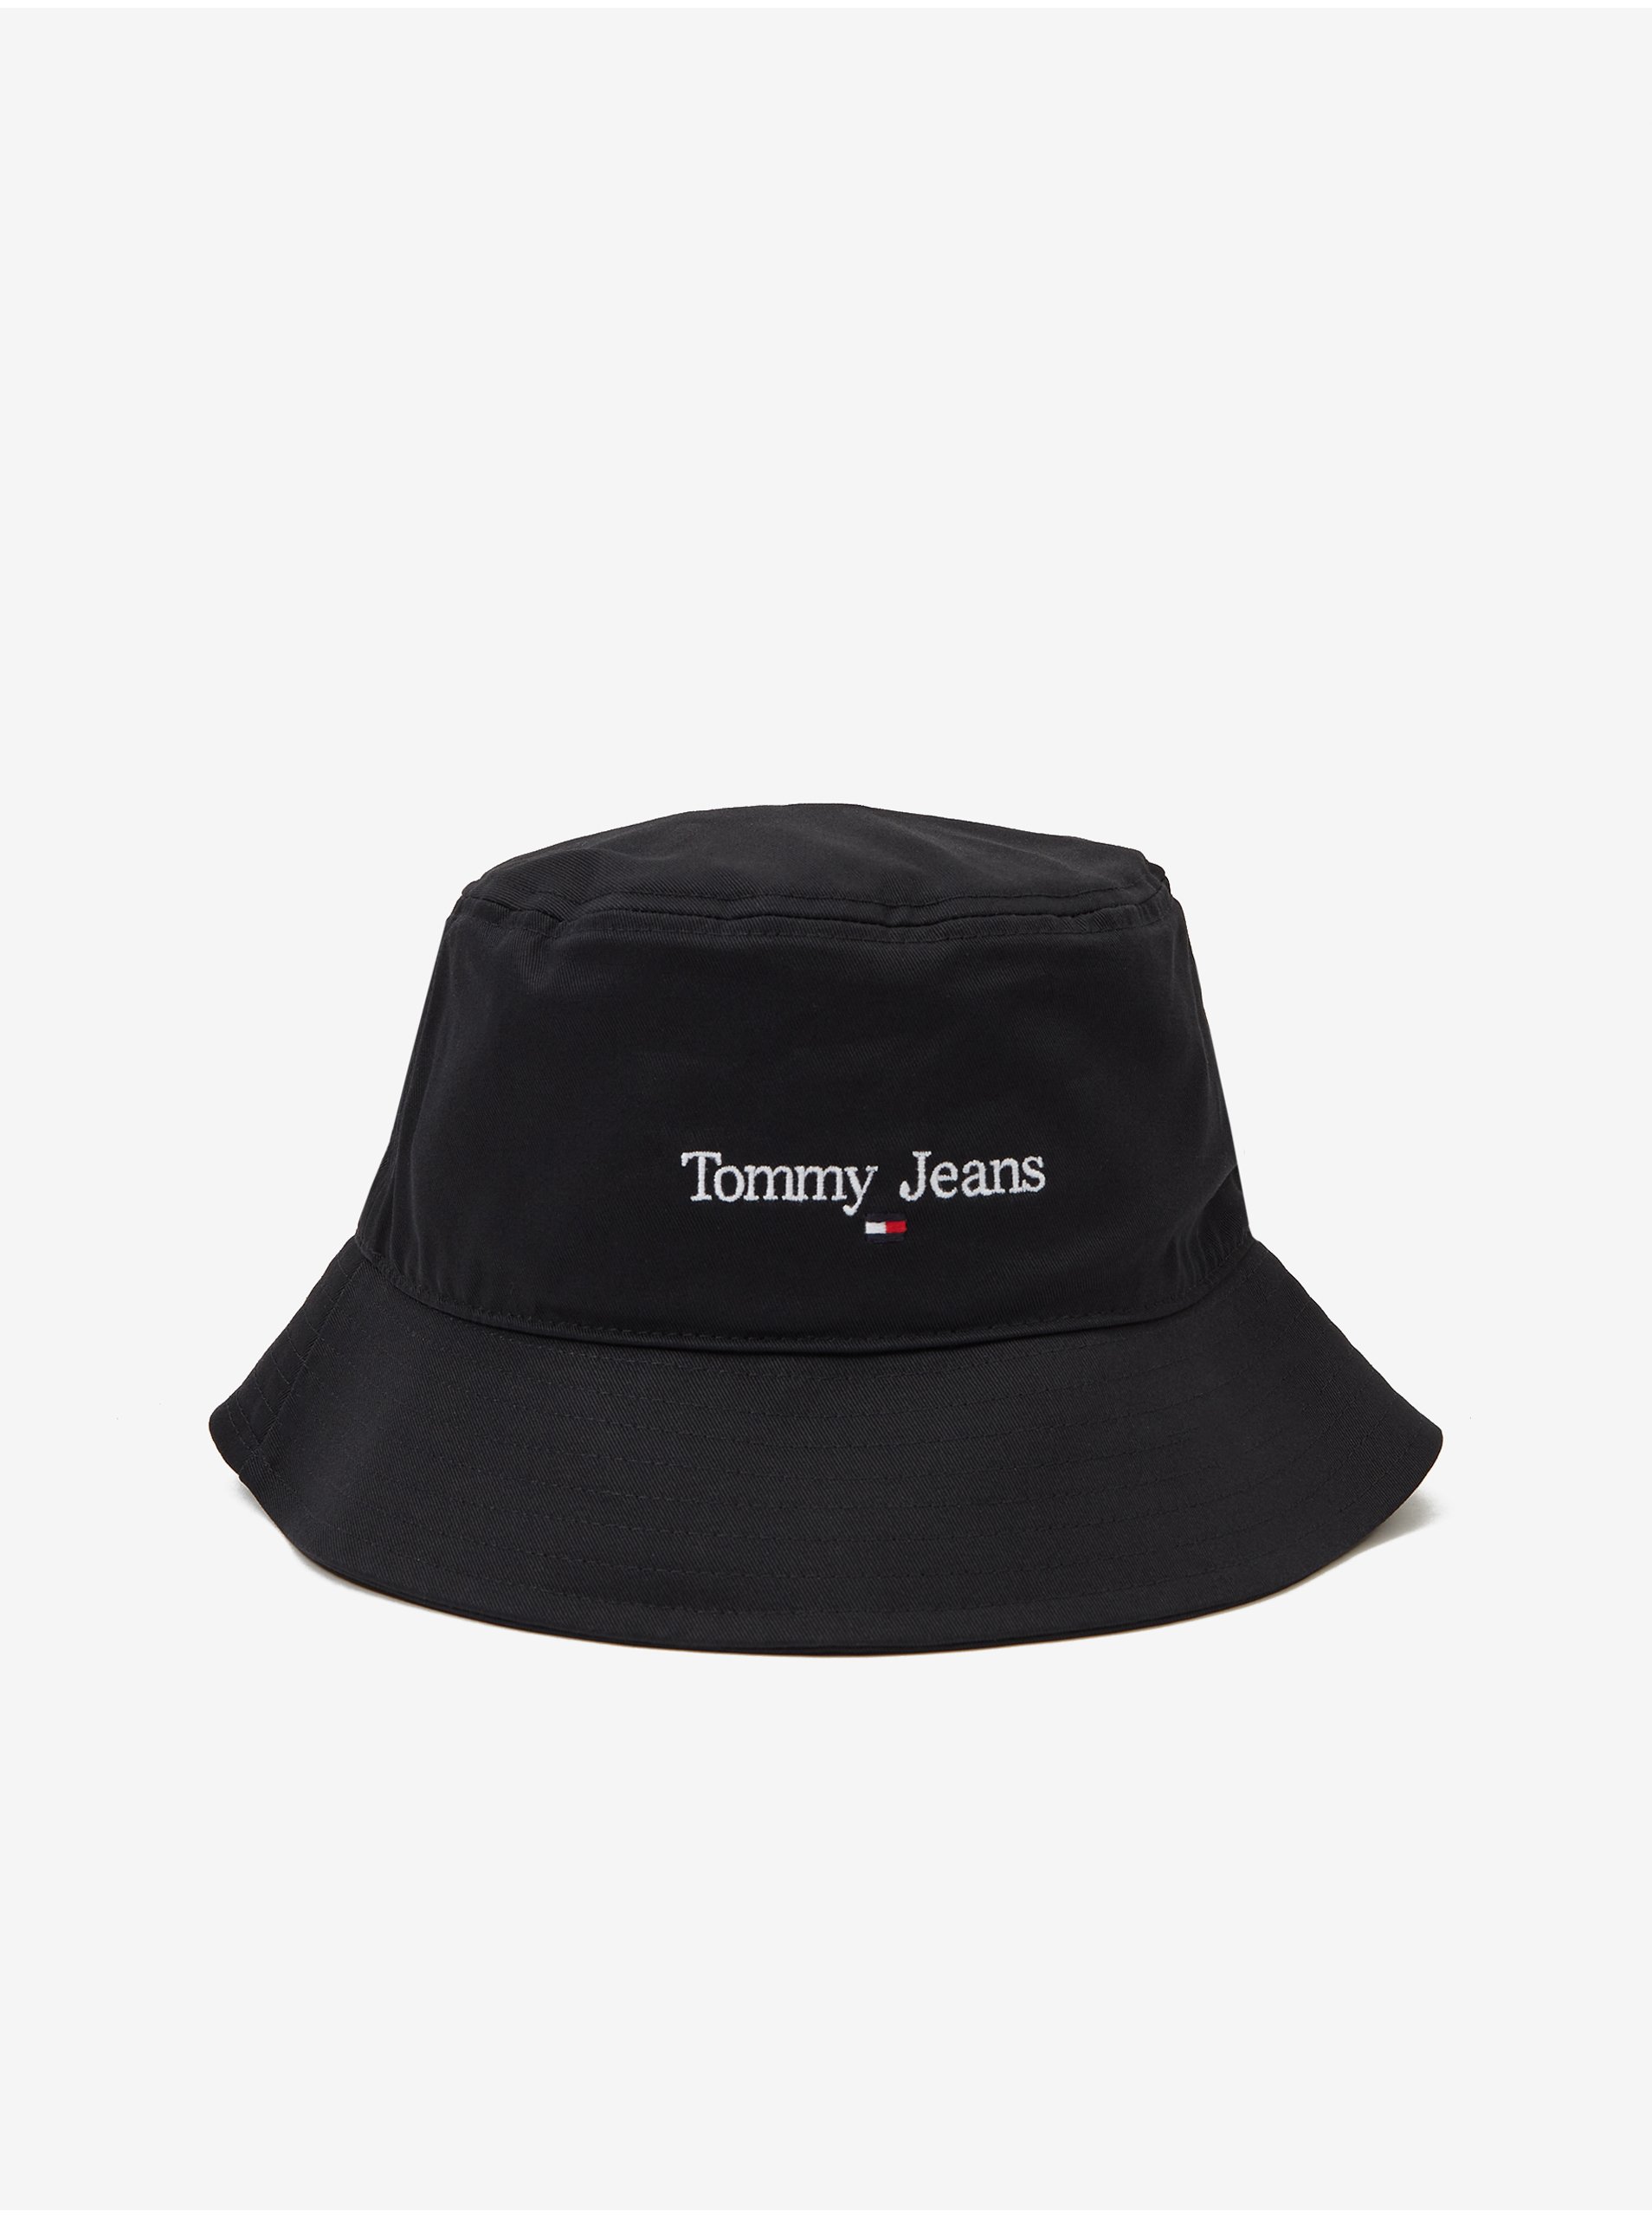 Black Ladies Hat Tommy Jeans - Ladies